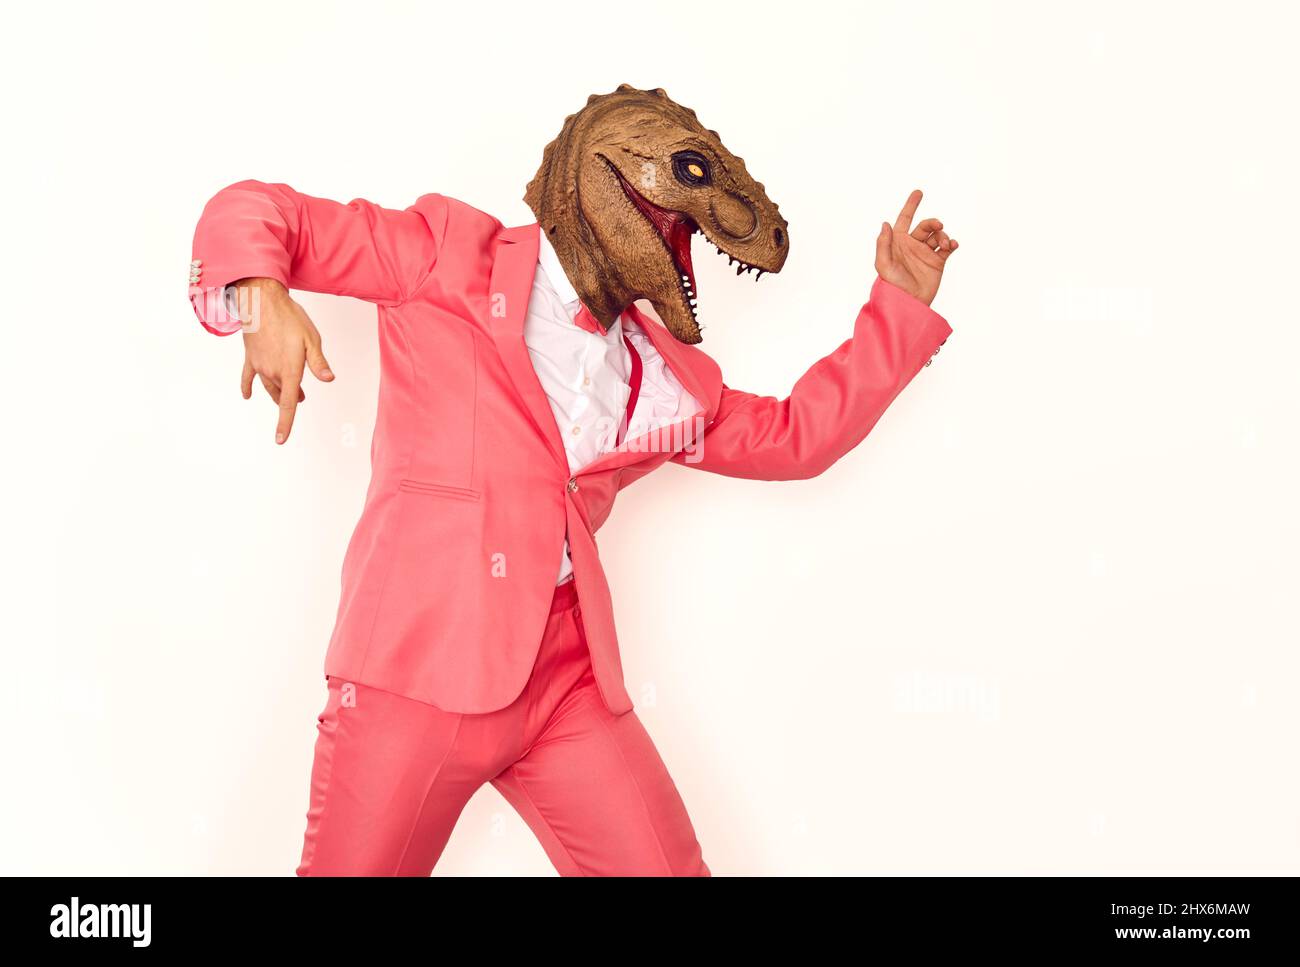 Lustiger Mann in einem pinken Anzug und einer Dinosaurier-Maske, der auf einer verrückten Party tanzt und Spaß hat Stockfoto